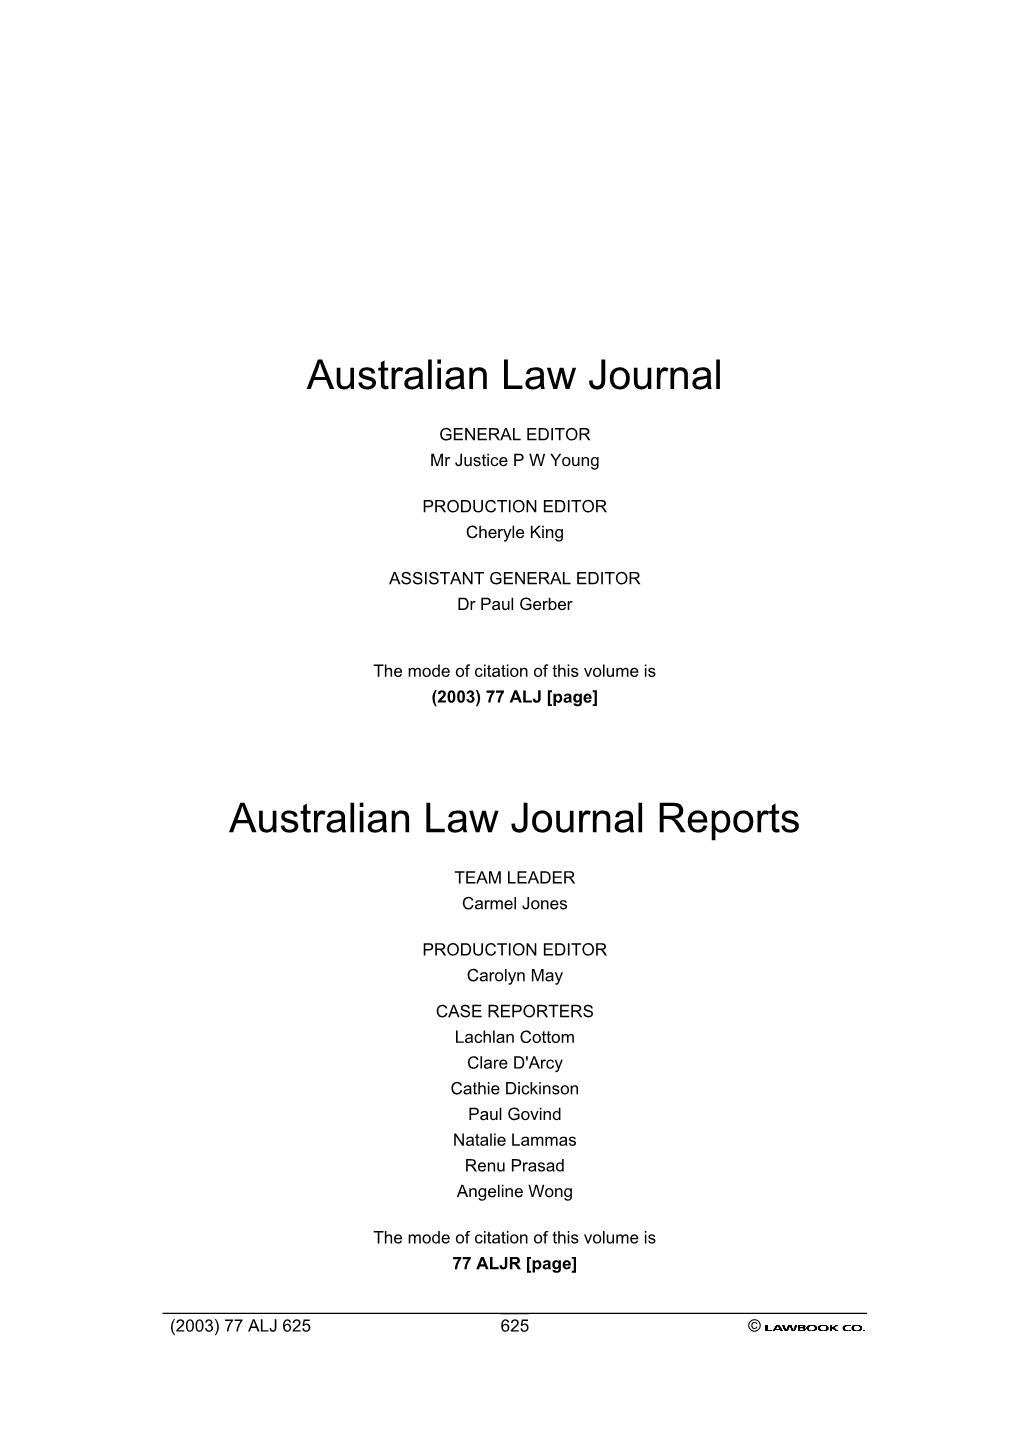 The Australian Law Journal